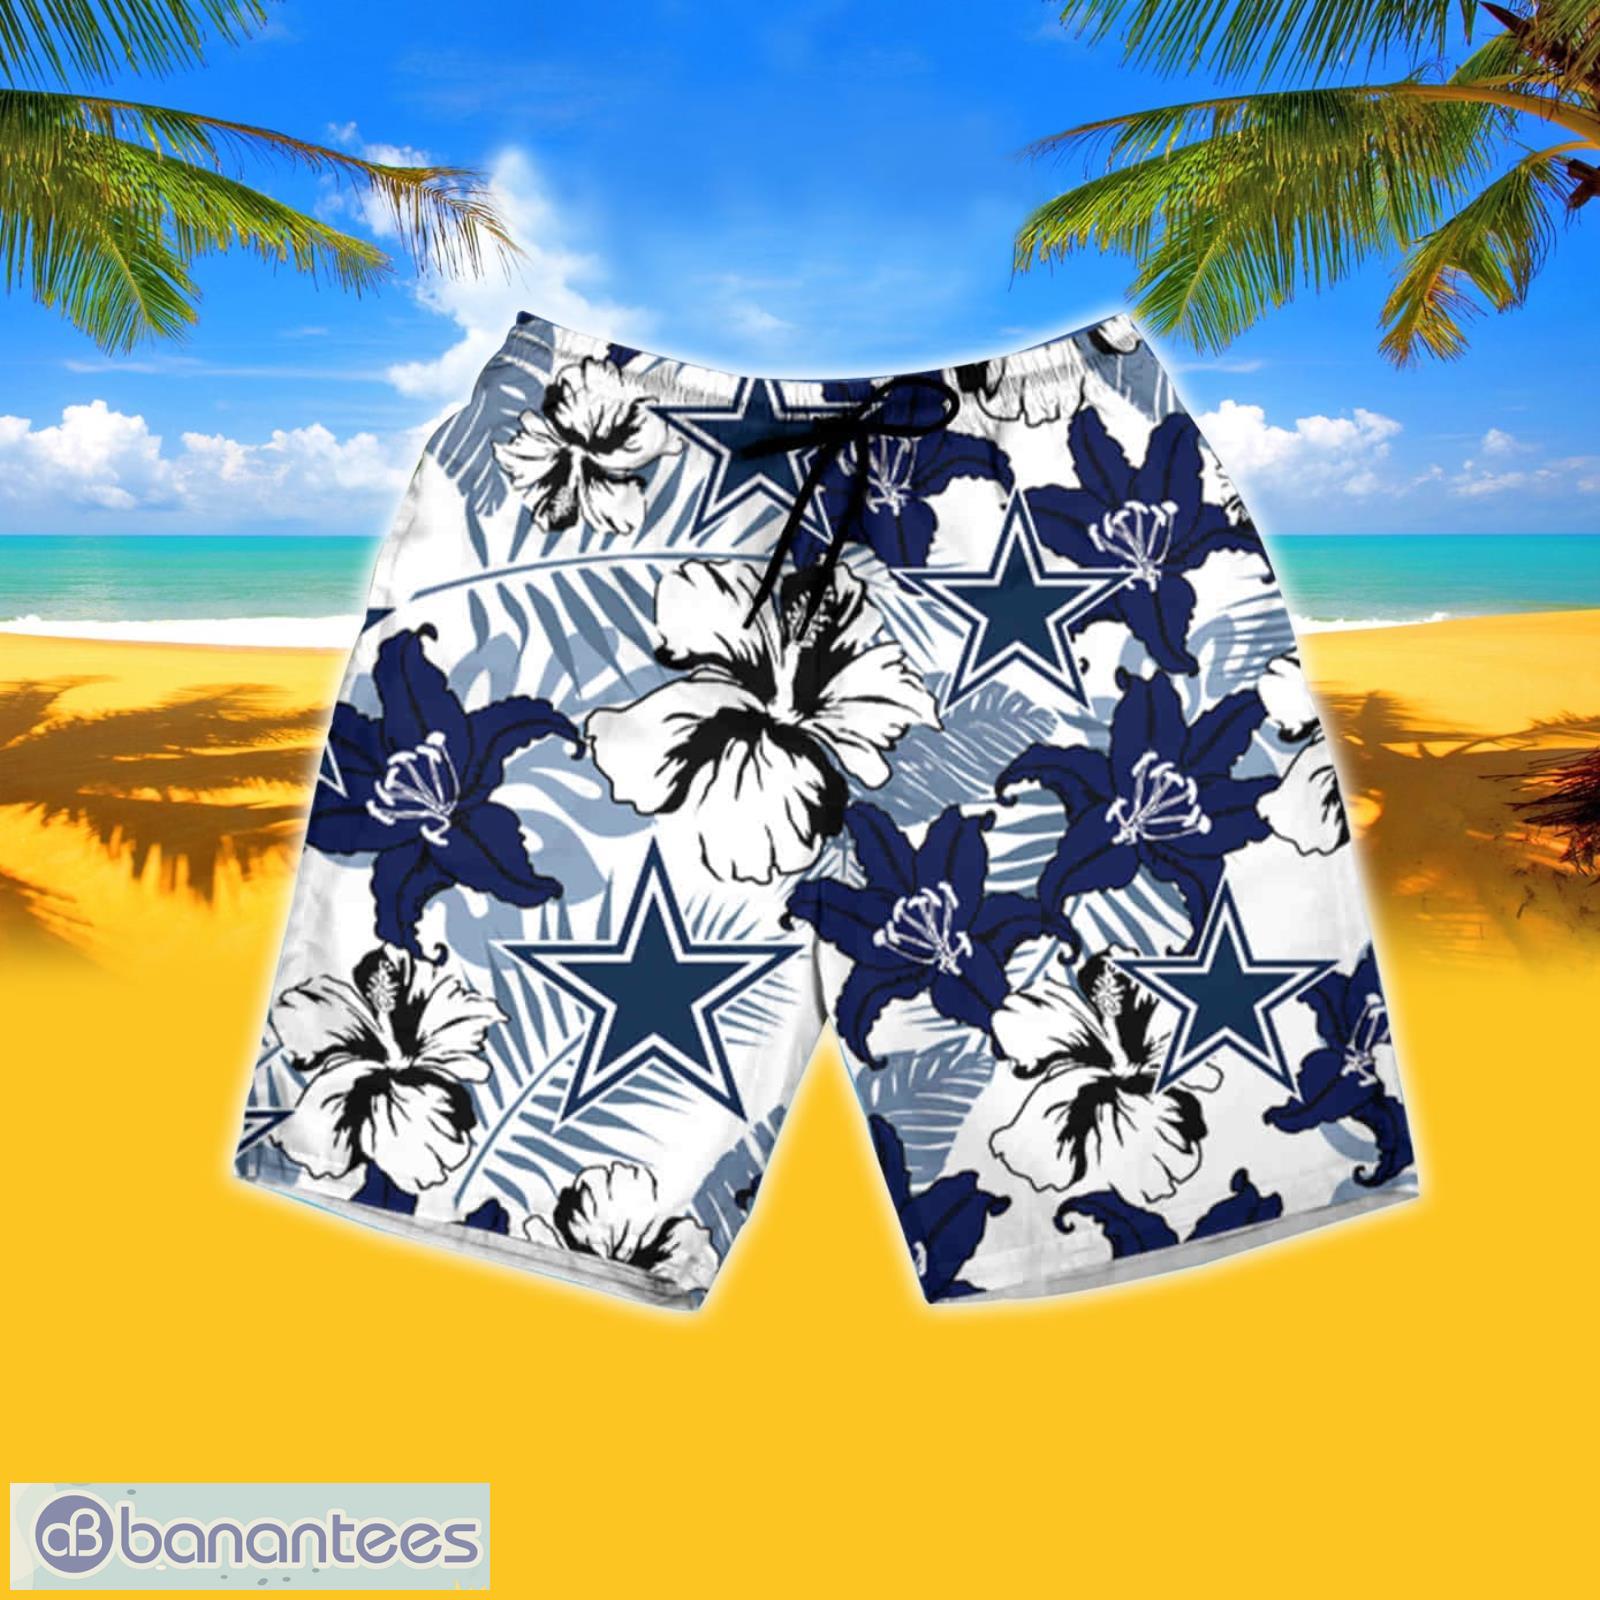 Nfl Dallas Cowboys Summer Hawaiian Shirt And Shorts - Banantees